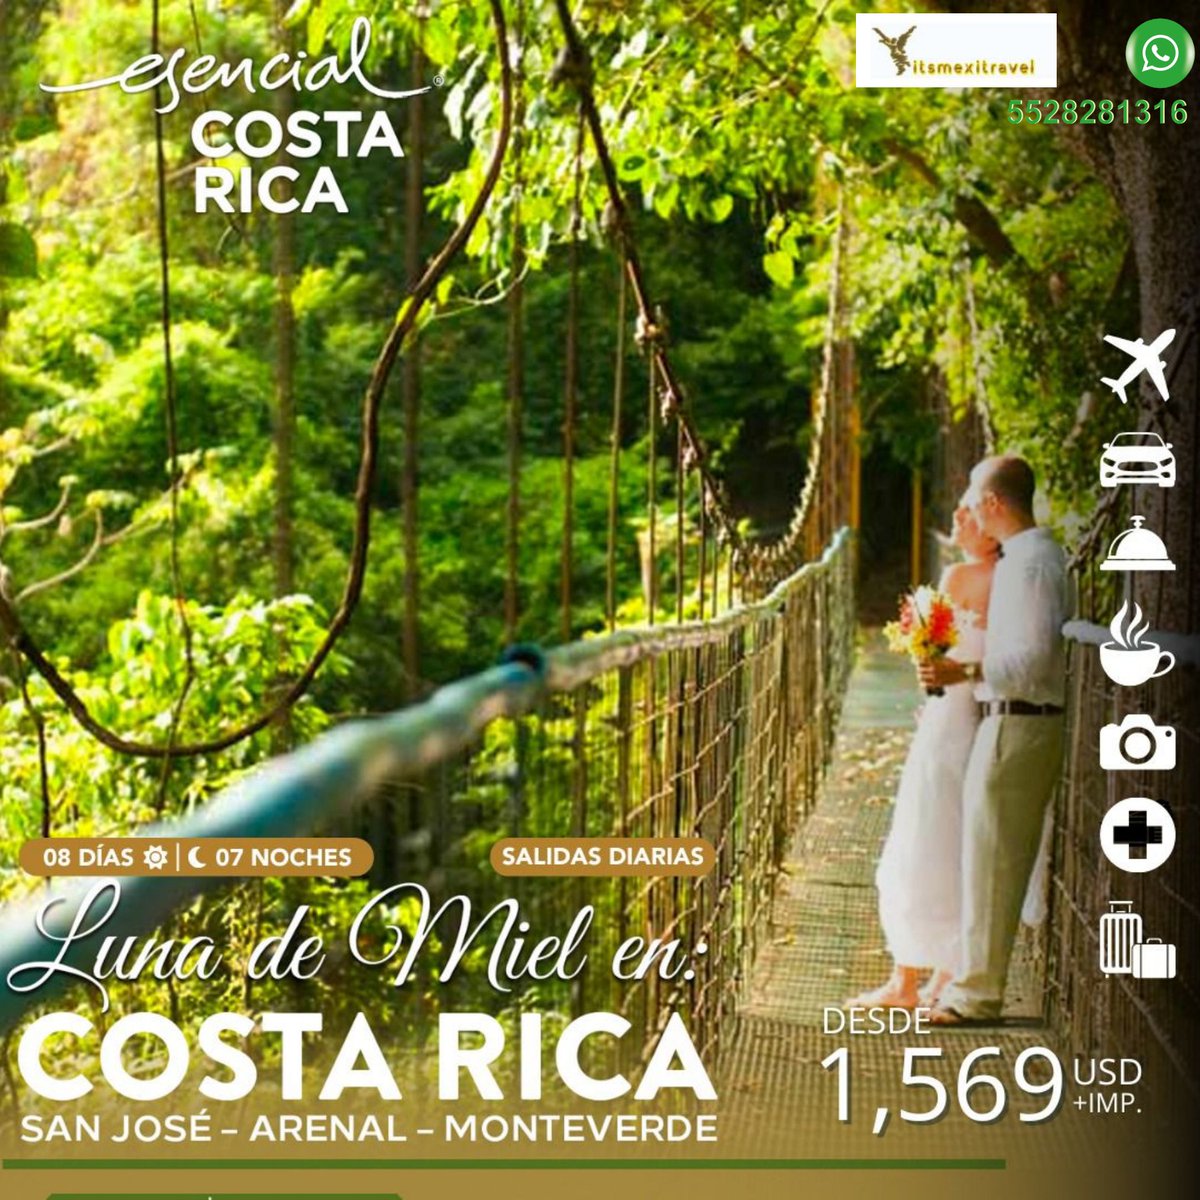 Sólo con #GavisaVacations #ItsMexitravel #MagnichartersMexitravel #MagnichartersIztacalco - Escápate a Costa Rica - Visita #DokaState #SanJose #VolcanPoas  #JardinesdelaPaz #Arenal y Tour de Canopy - Solicita itinerario a:  its_mexitravel@yahoo.es